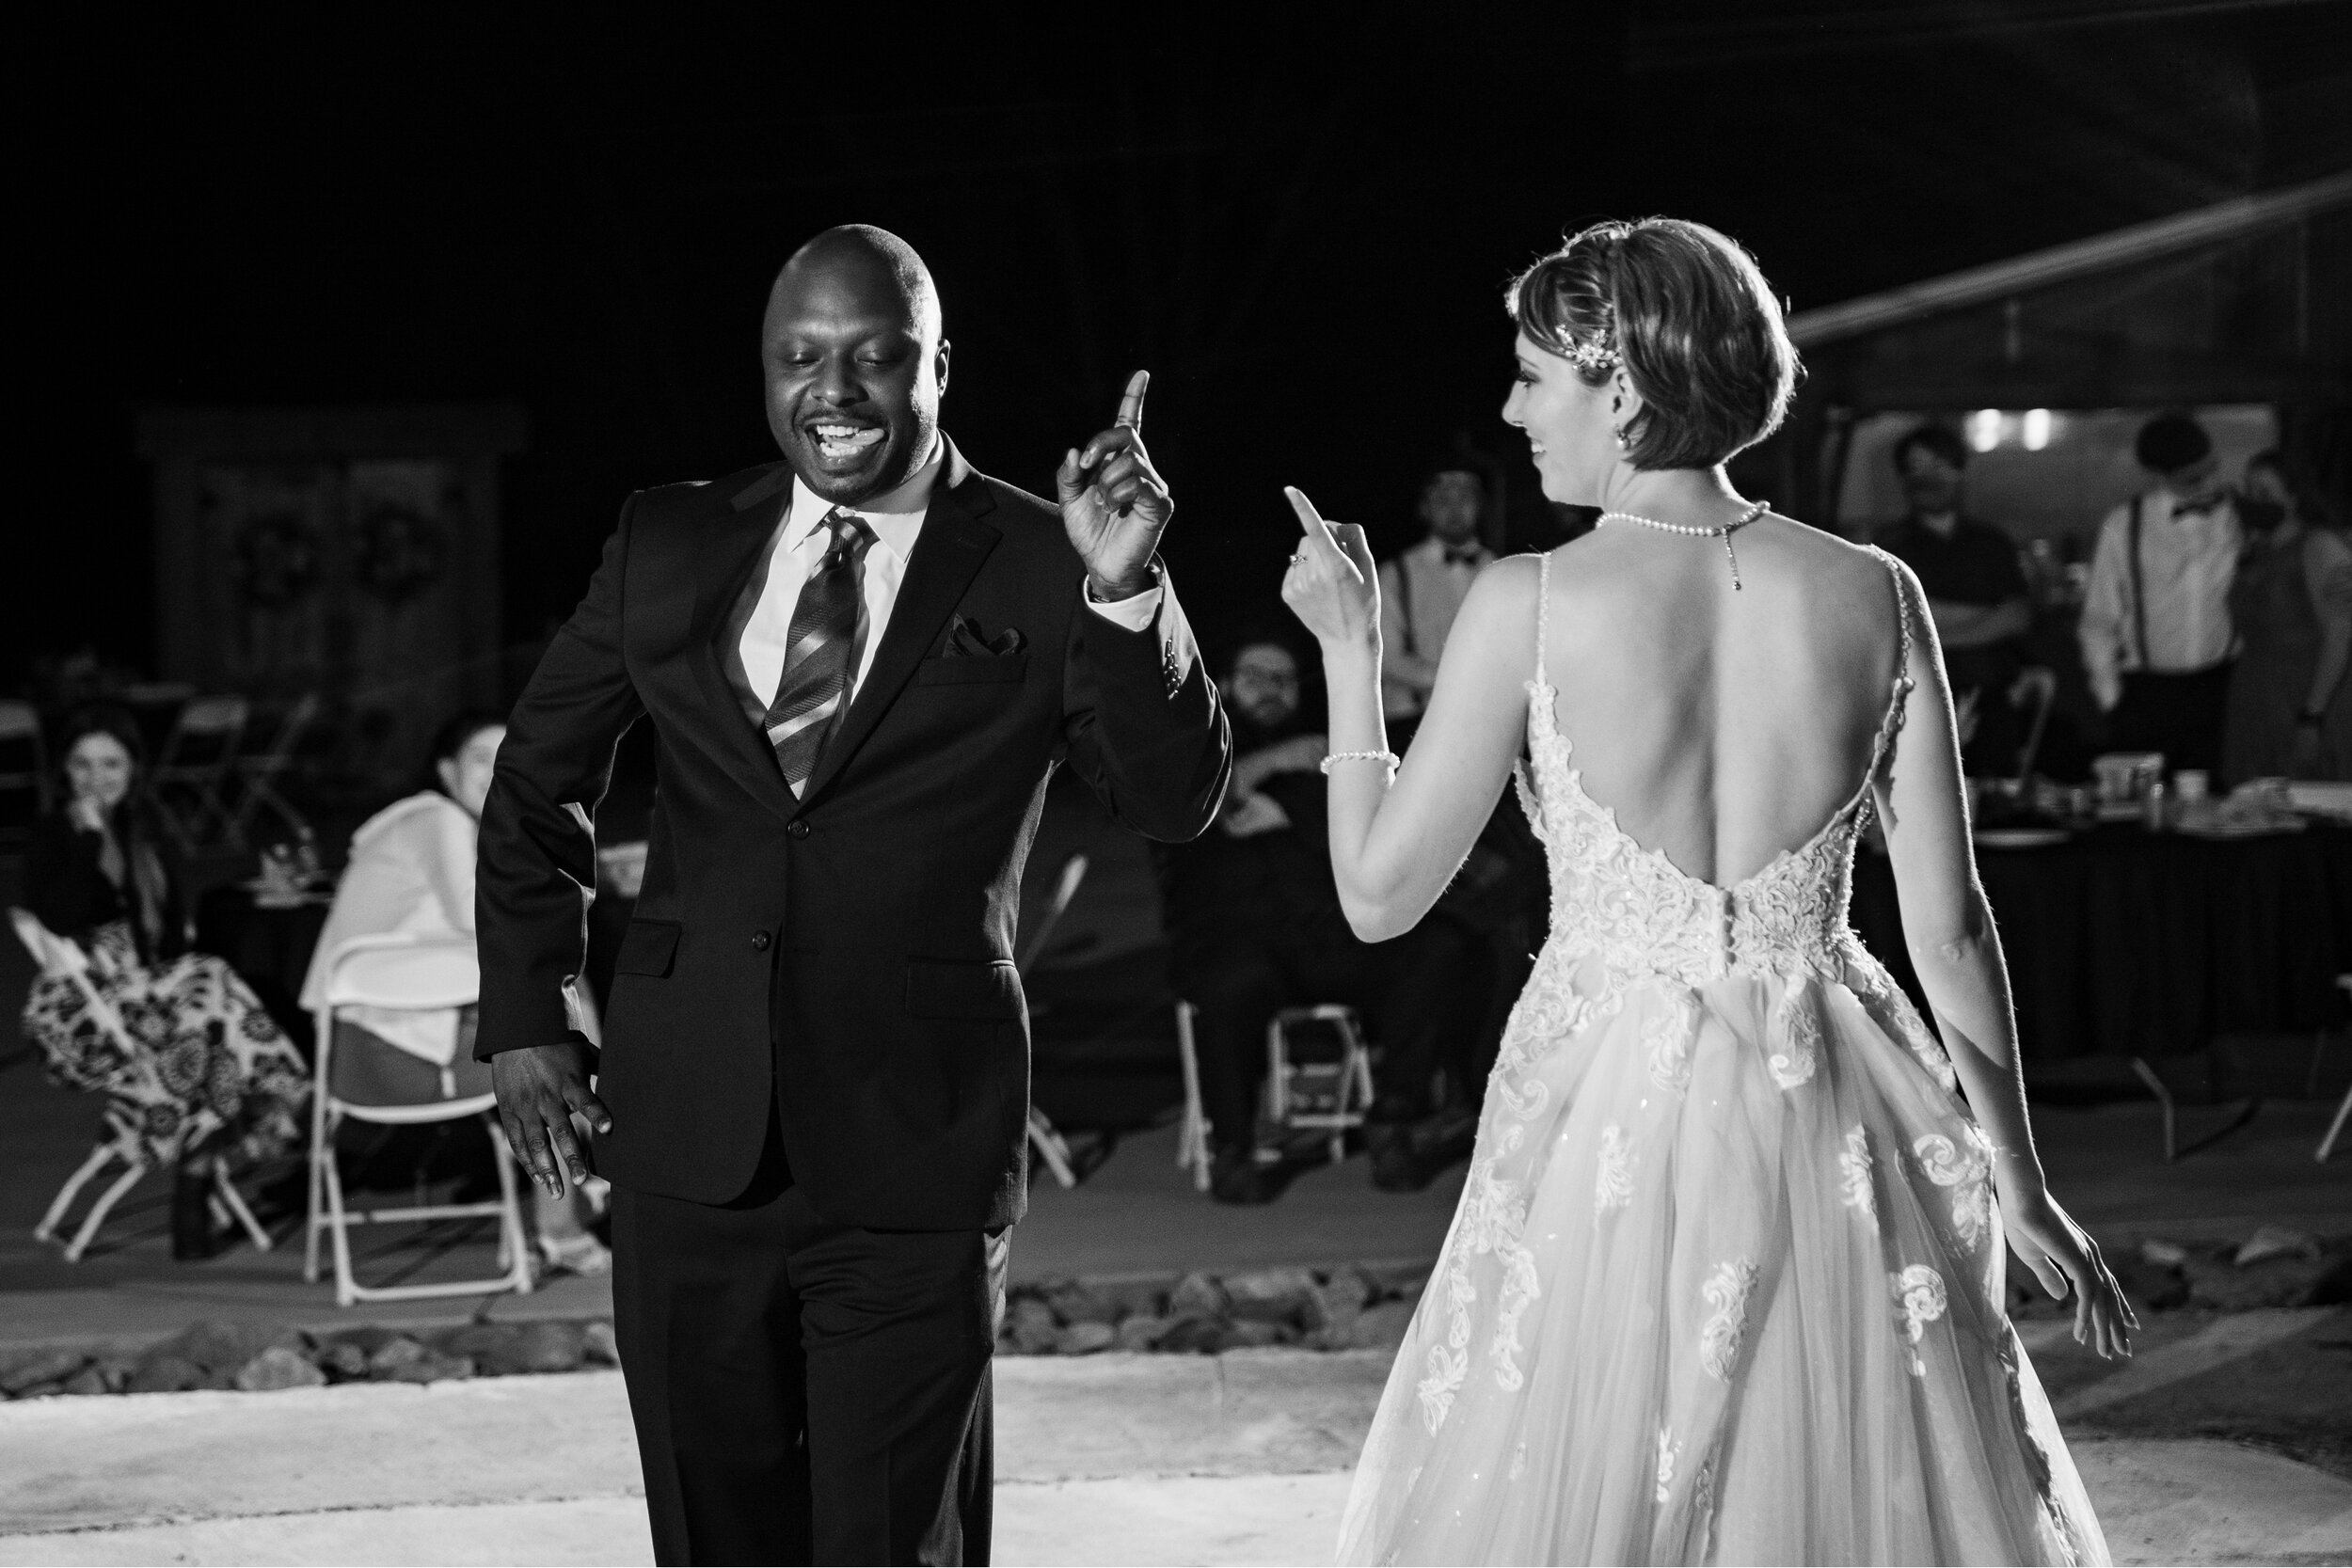 Leah + Daniel Wedding Blog 4 45.jpg